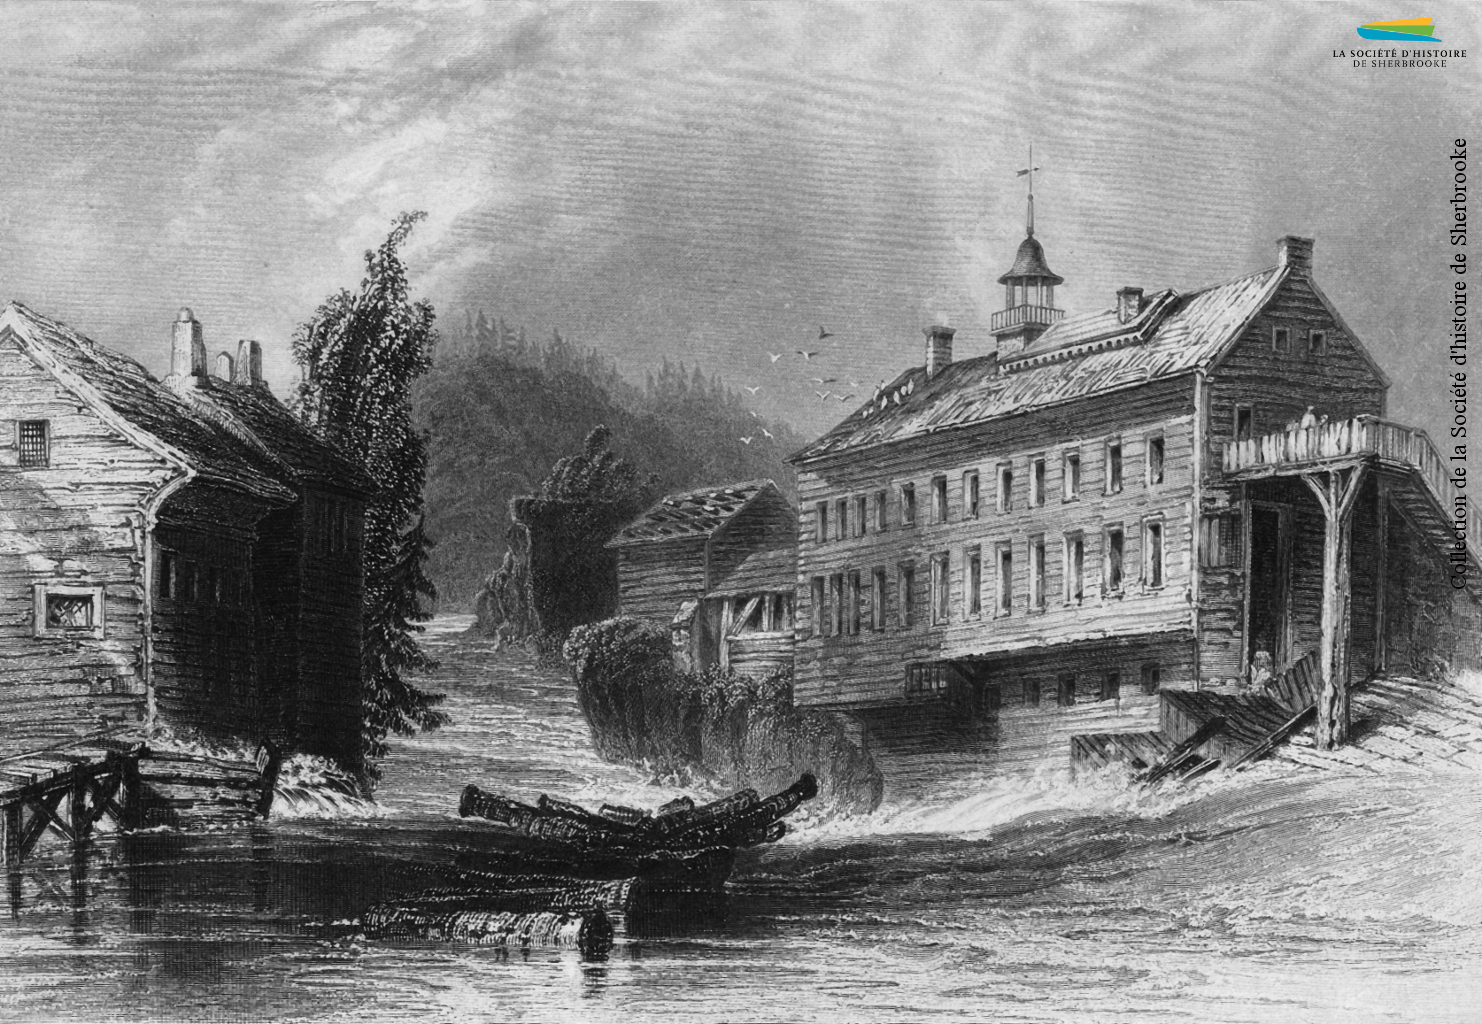 Une gravure de la fabrique de laine de Charles Goodhue, vers 1830. Elle est située près du confluent des rivières Magog et Saint-François, proche de l’actuel pont Gilbert-Hyatt.